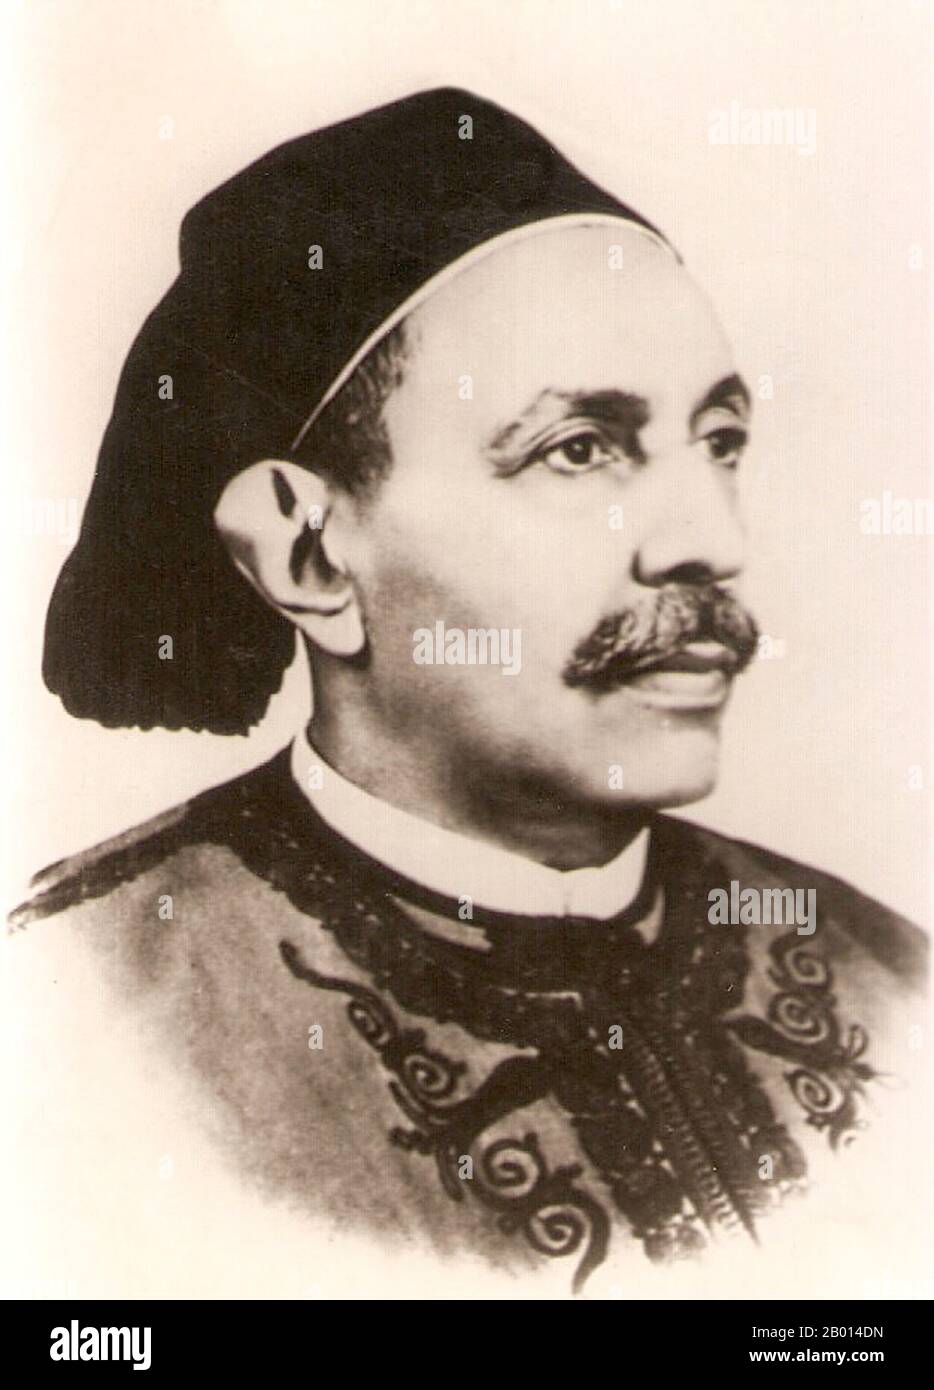 Libye : le roi Idris, (12 mars 1889 – 25 mai 1983), premier et unique roi de Libye (r. 1951-1969) et le chef de l'ordre musulman Senussi. C. 1951. Idris AS-Senussi, né Sayyid Muhammad Idris bin Muhammad al-Mahdi AS-Senussi, a proclamé un émirat indépendant de Cyrénaïque en 1949. Il a également été invité à devenir émir de la Tripolitaine, une autre des trois régions traditionnelles qui composent maintenant la Libye moderne, en commençant le processus d'unification de la Libye sous une seule monarchie. Il devint roi de Libye en 1951, proclamant son indépendance. Il a été destitué par un coup d'État militaire en 1969 par Mouammar Kadhafi. Banque D'Images